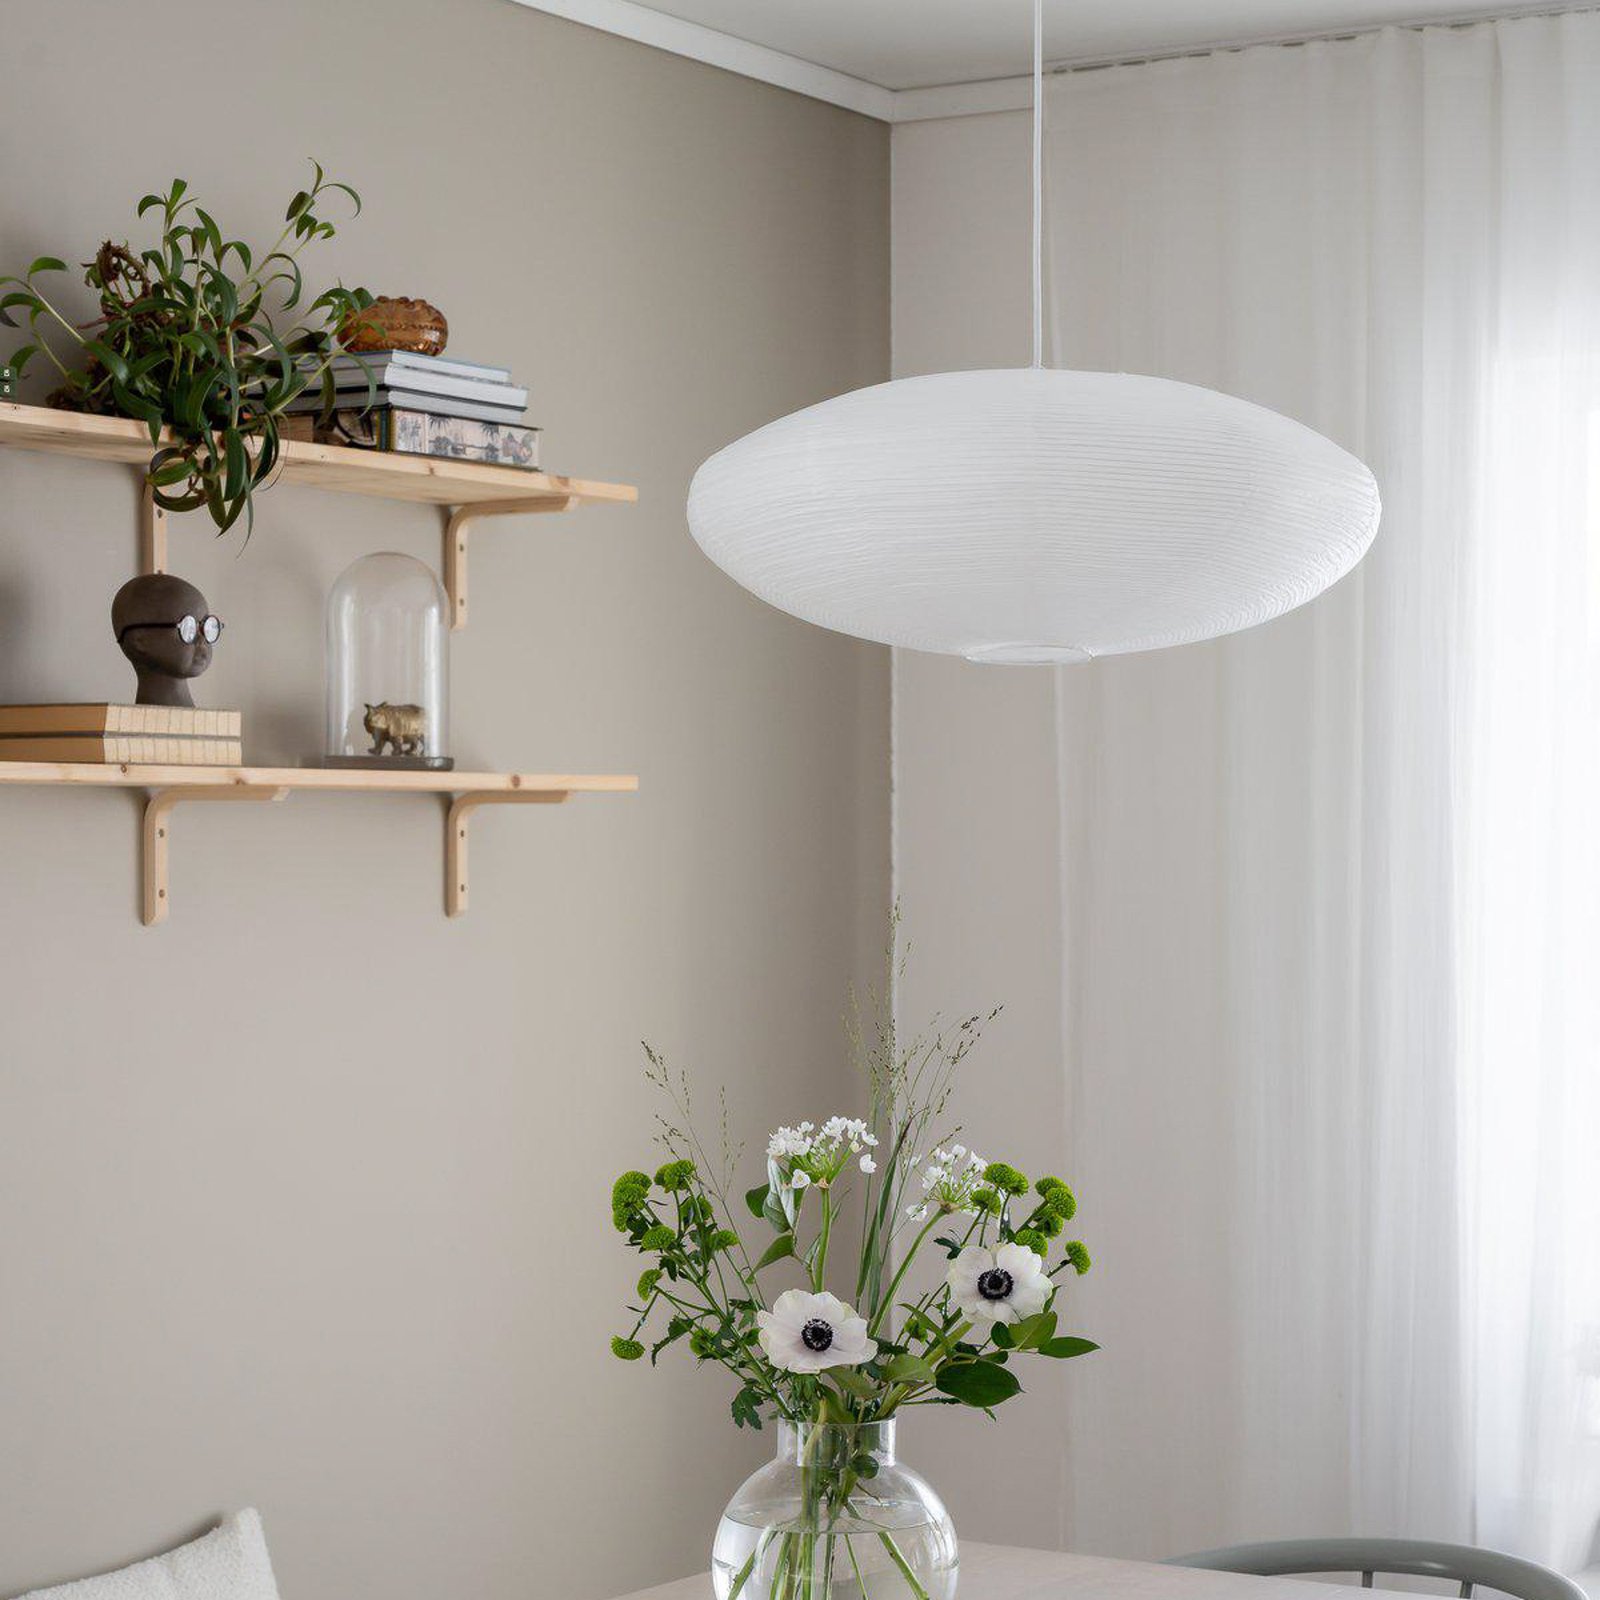 PR Home závěsné svítidlo Yuni, bílé, Ø 60 cm, bílý závěs, E14